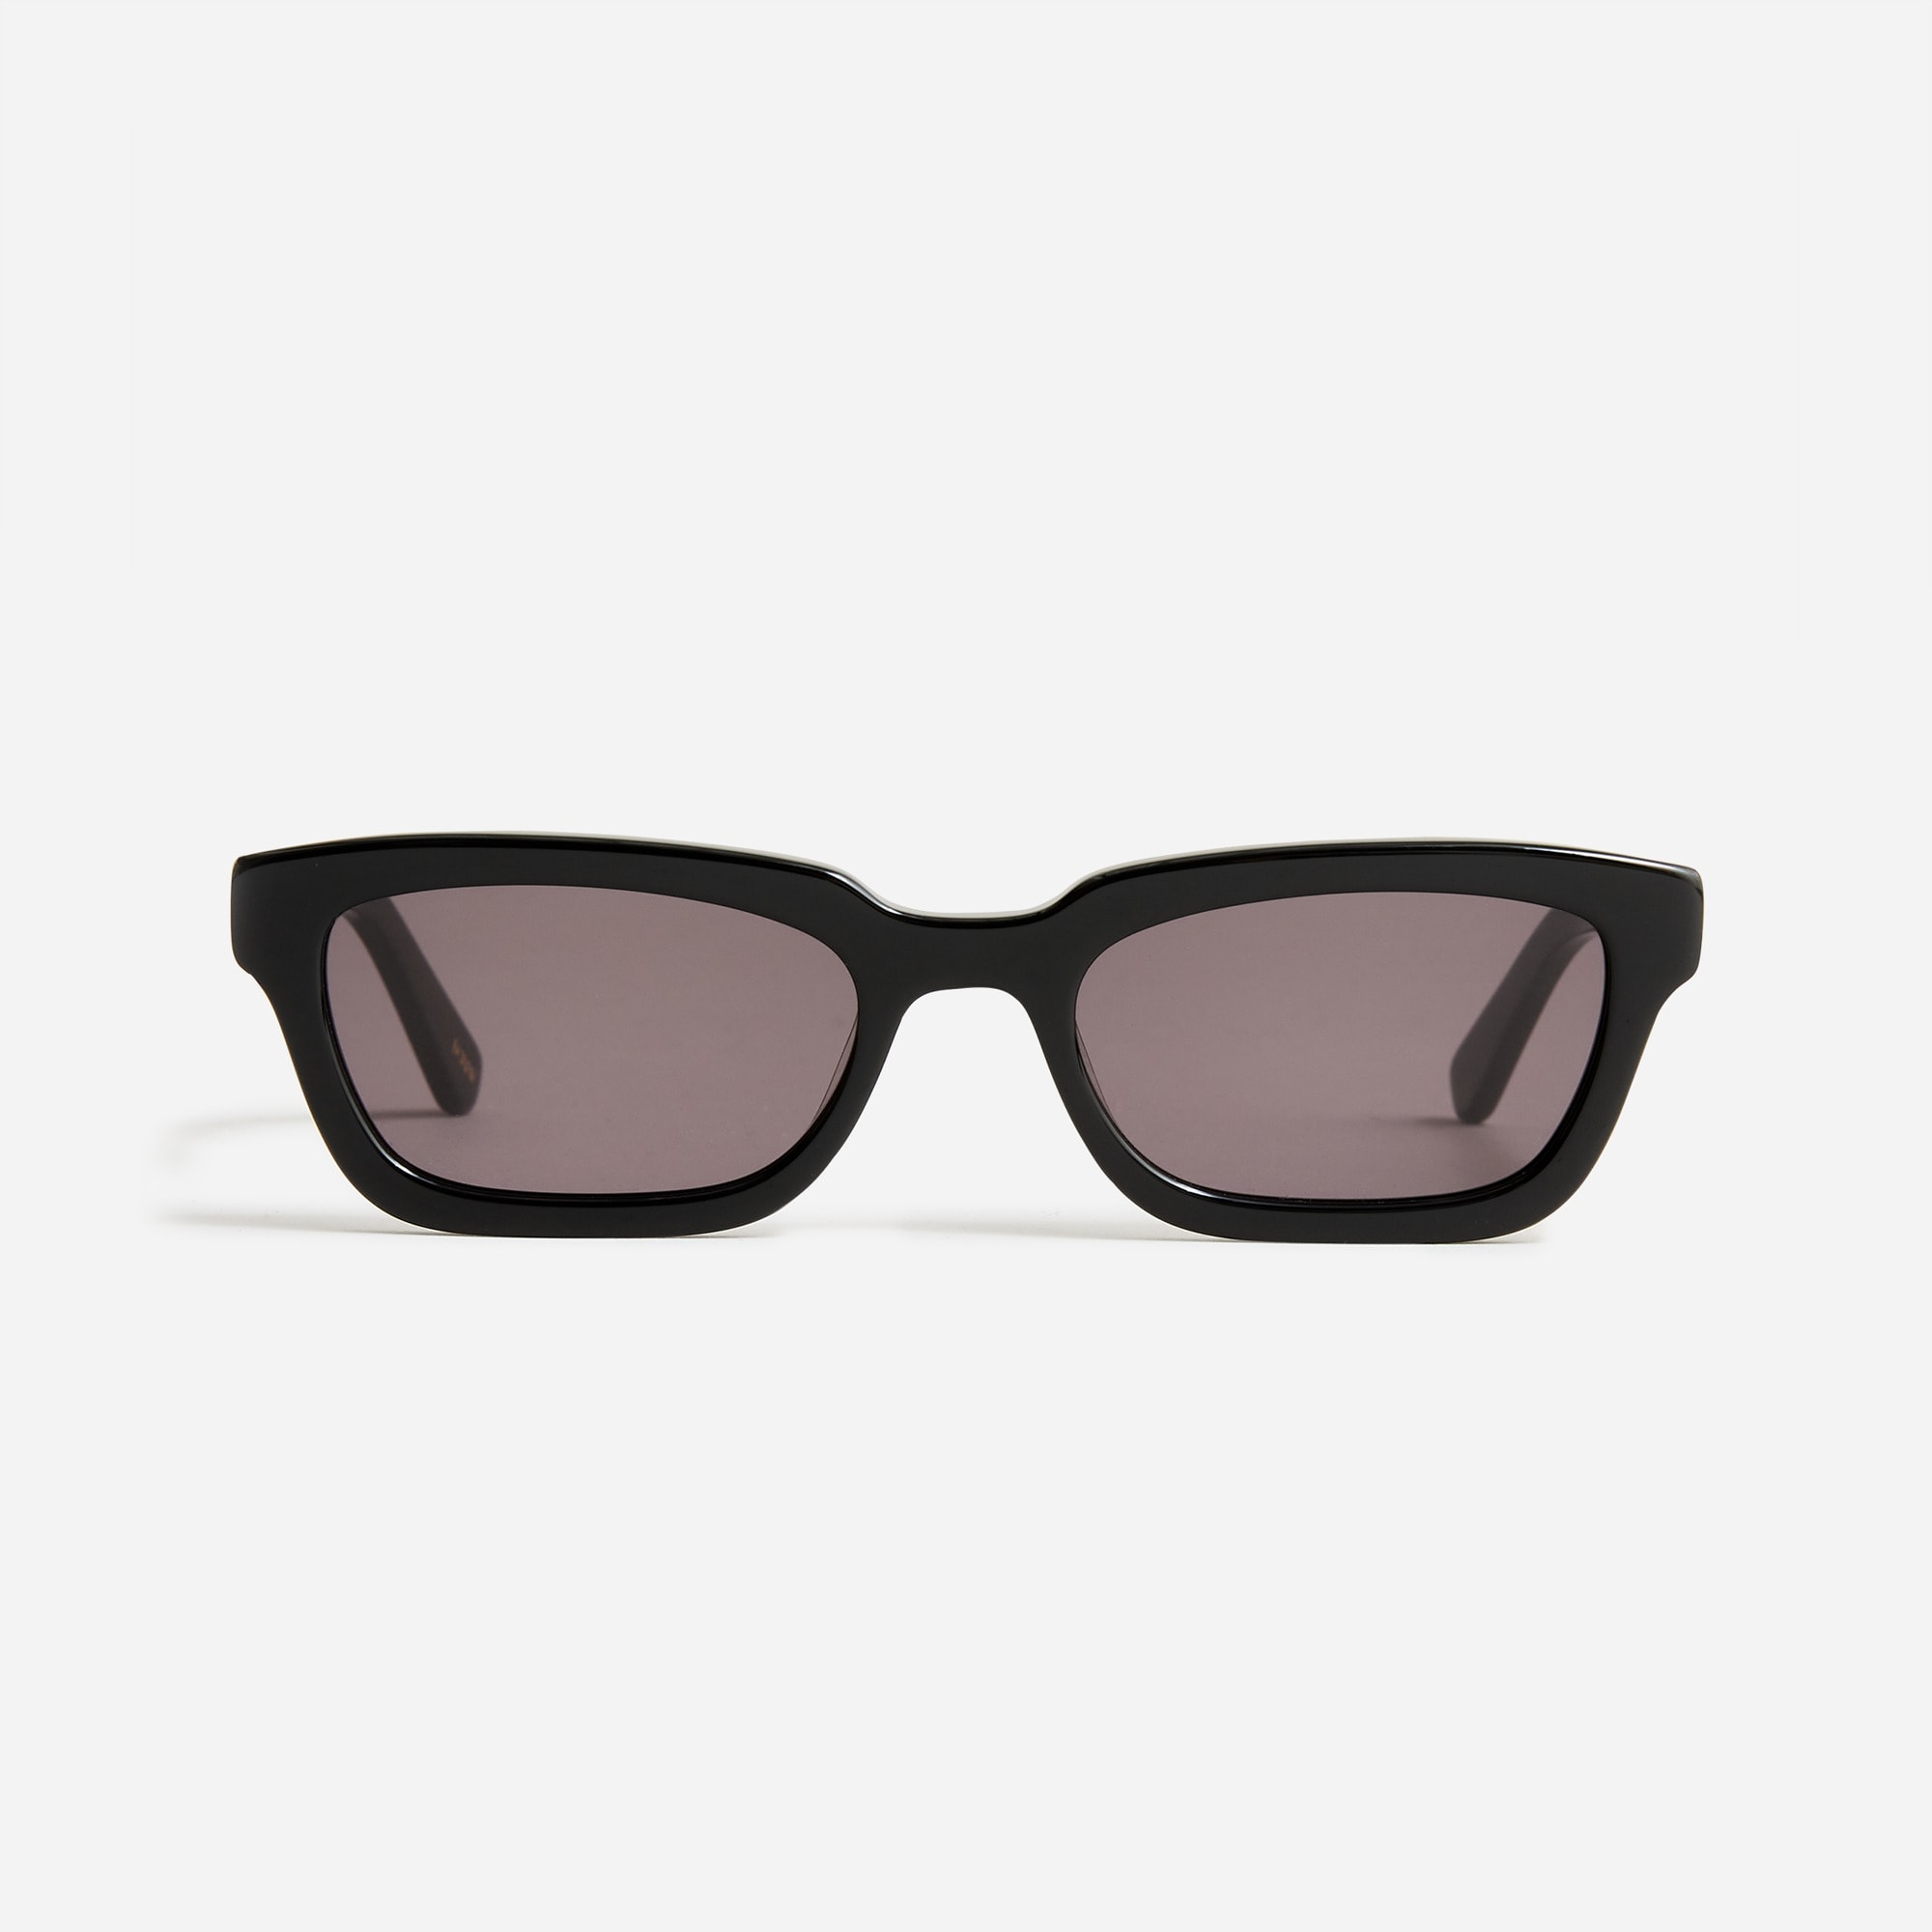 J.Crew: Angular Sunglasses For Women